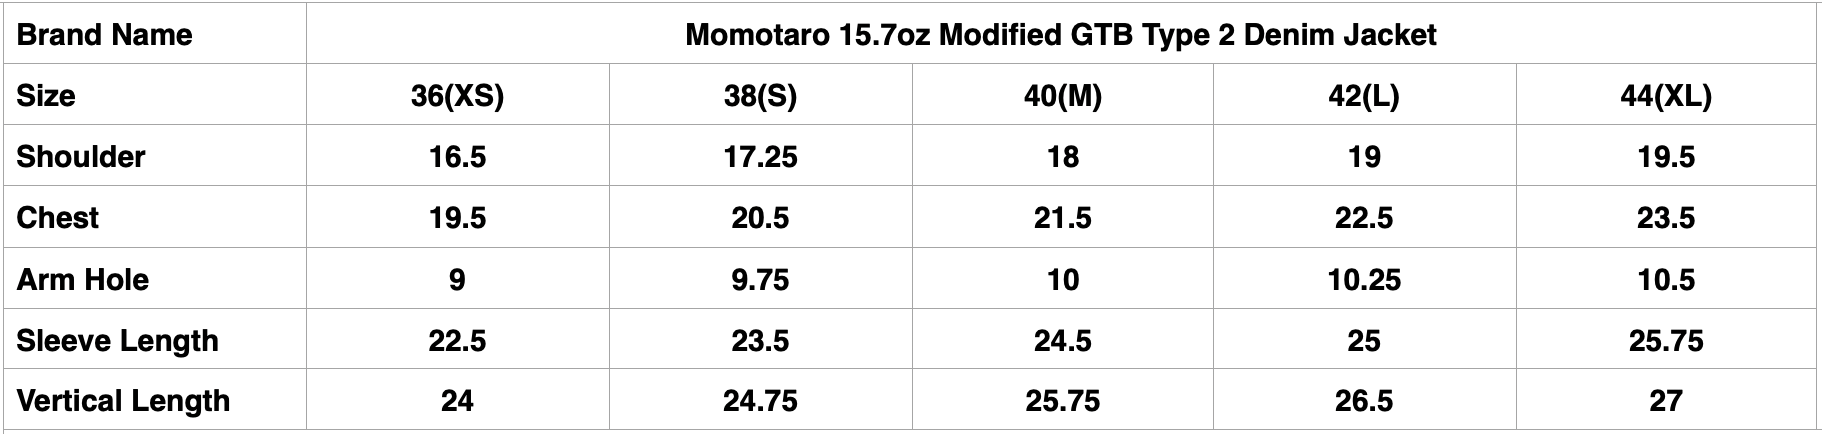 Momotaro 15.7oz Modified GTB Type 2 Denim Jacket